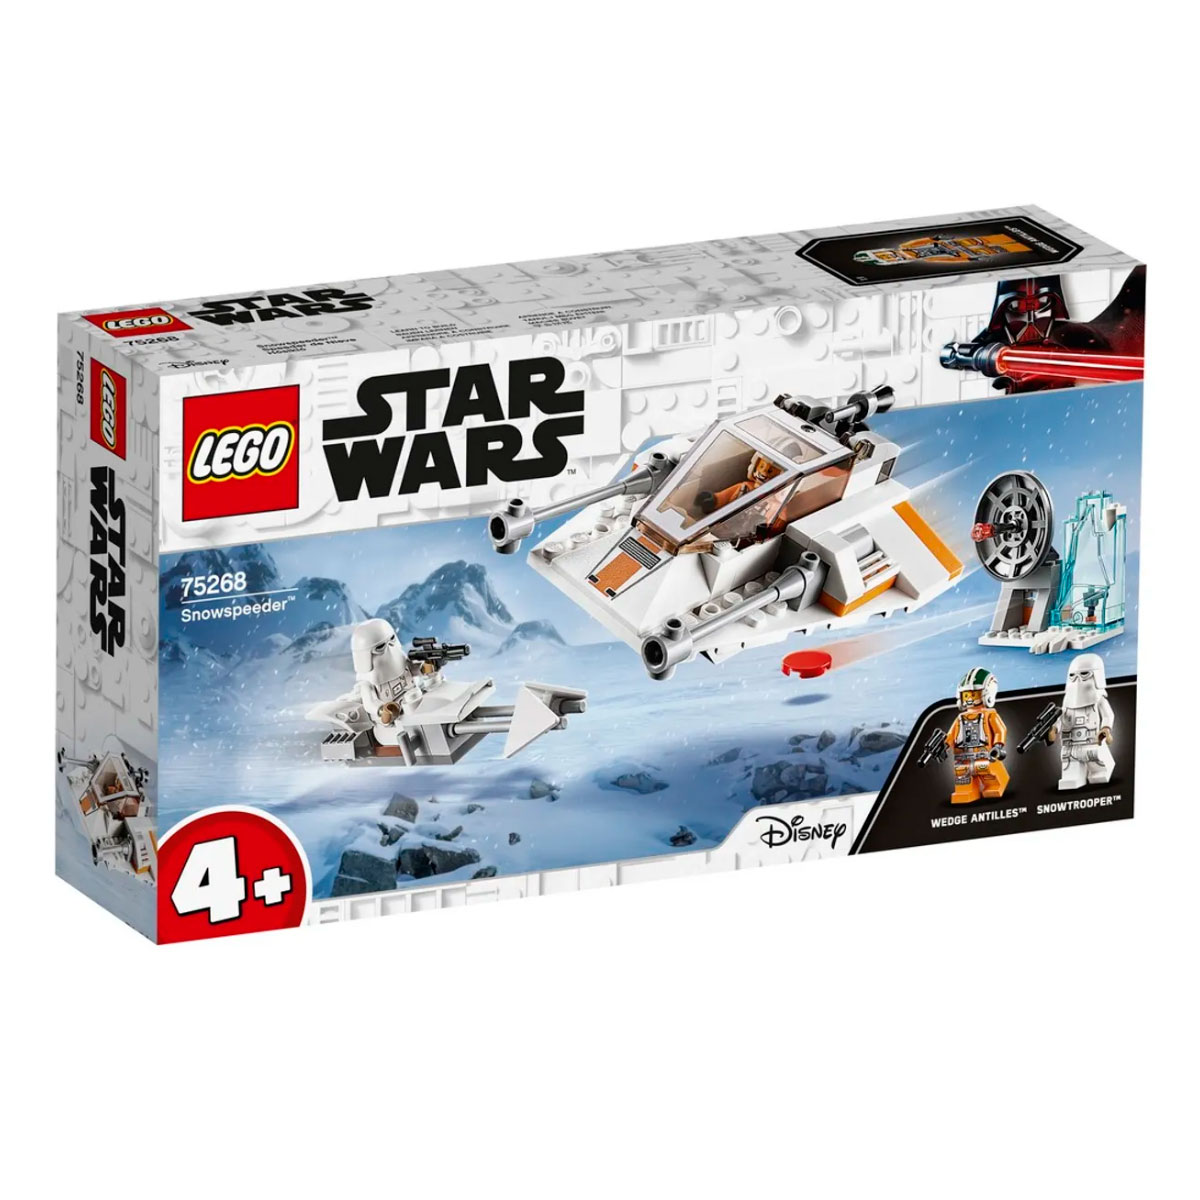 LEGO Star Wars - Disney - Snowspeeder - 75268